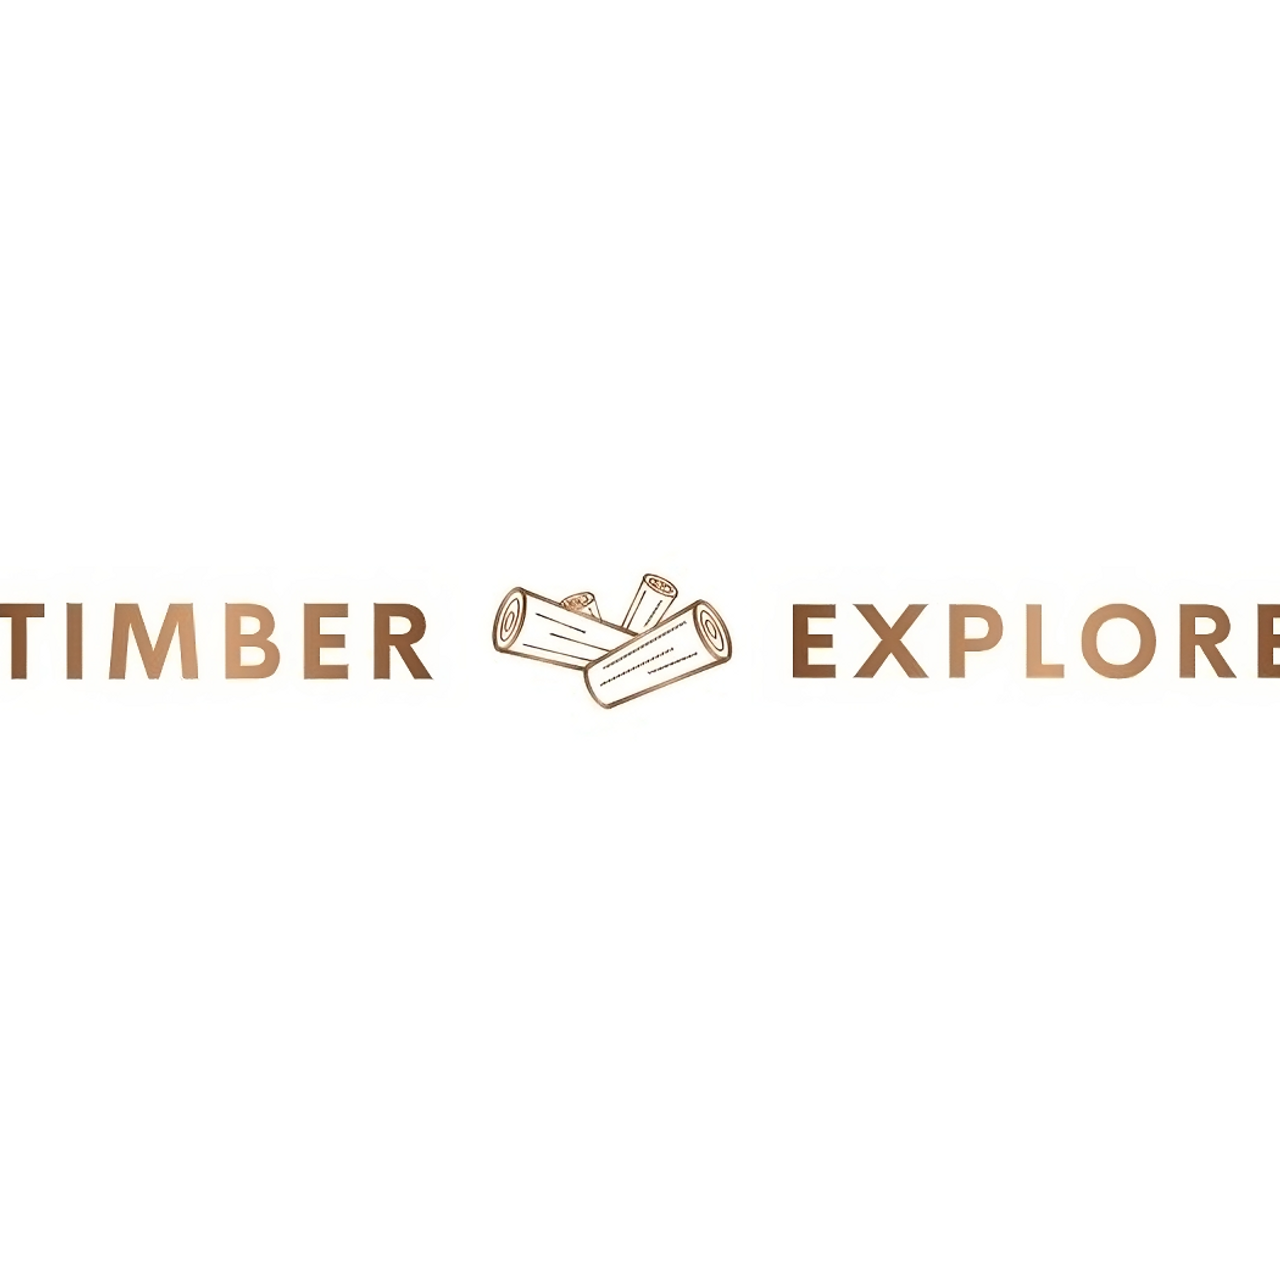 timberexplore